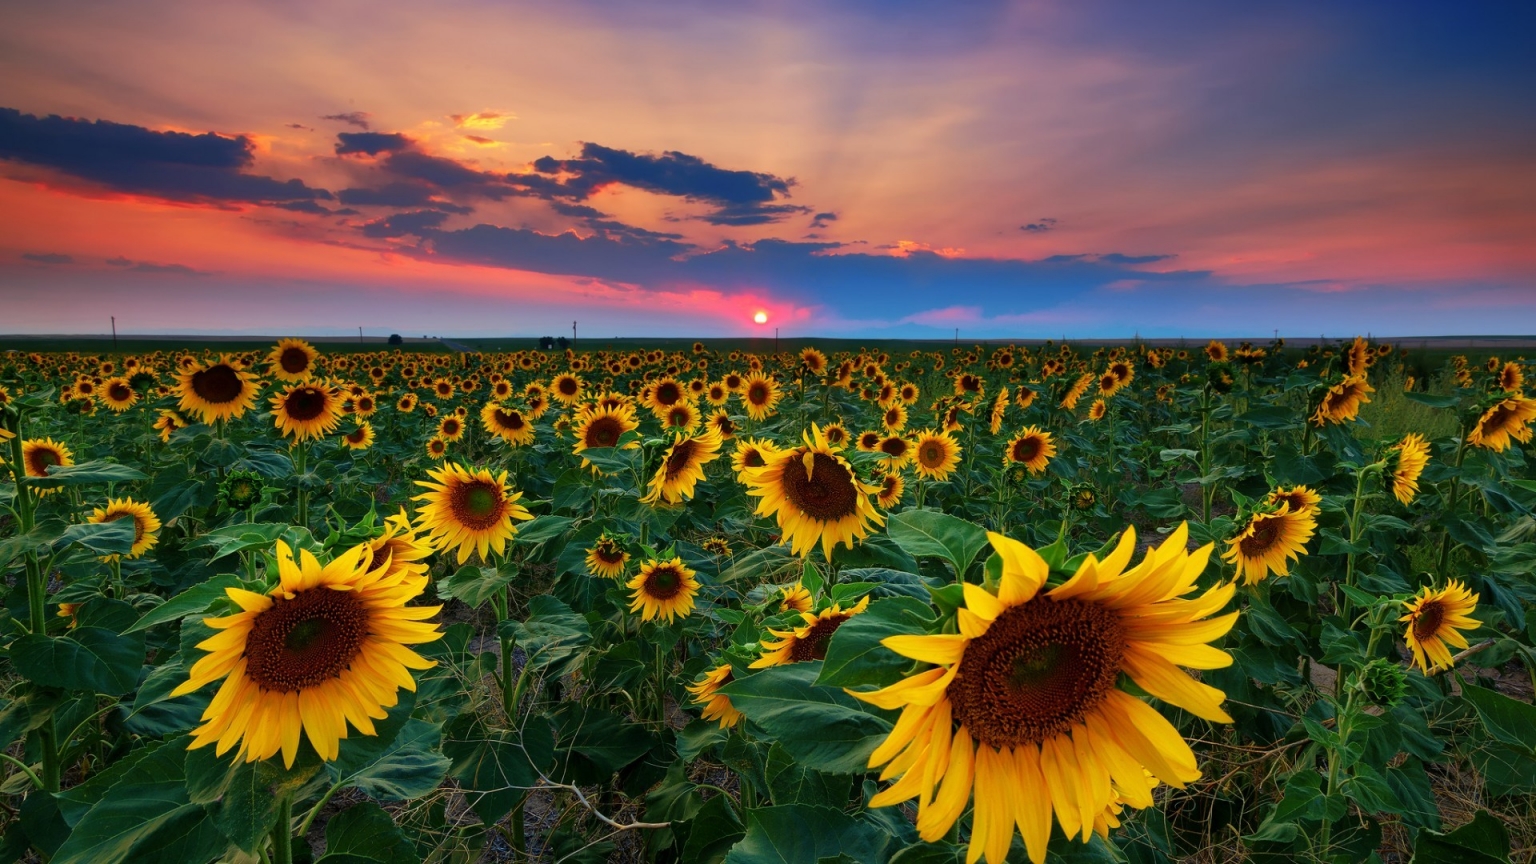 Denver Sunflowers Field for 1536 x 864 HDTV resolution